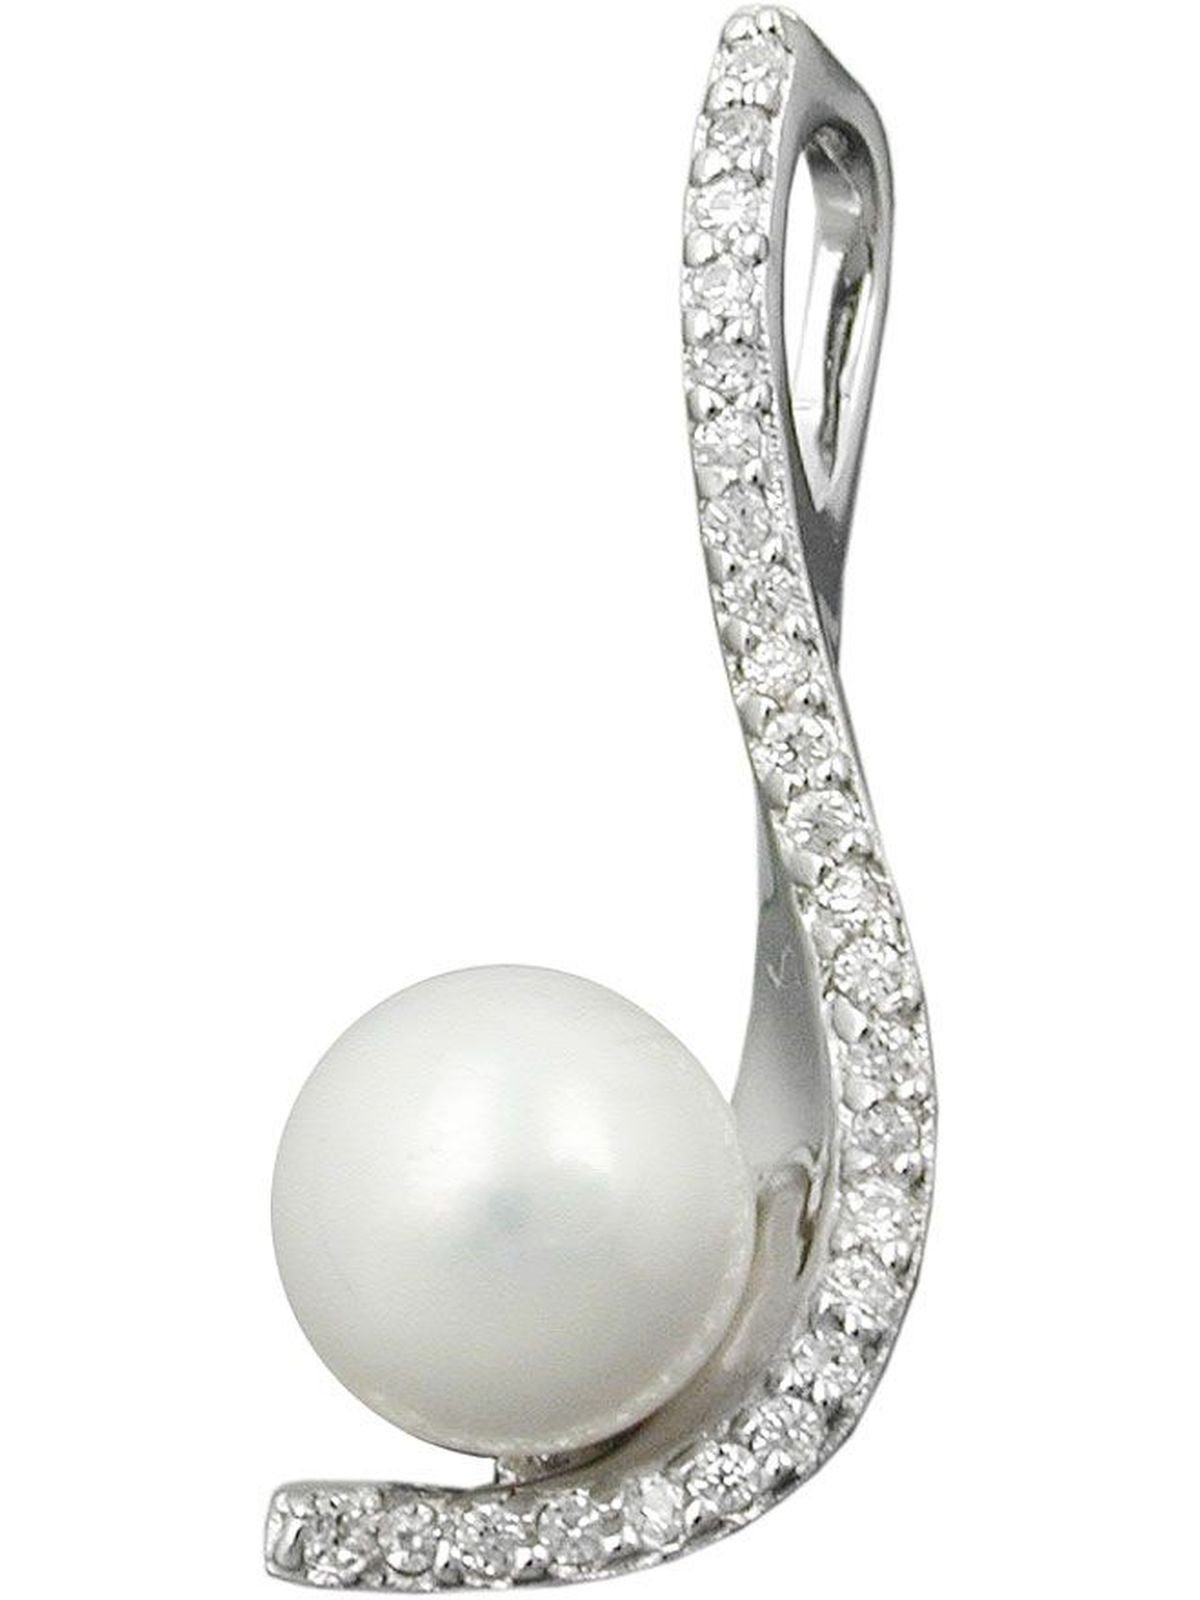 Gallay Perlenanhänger 25x10mm Zirkonias und Zuchtperle rhodiniert Silber 925